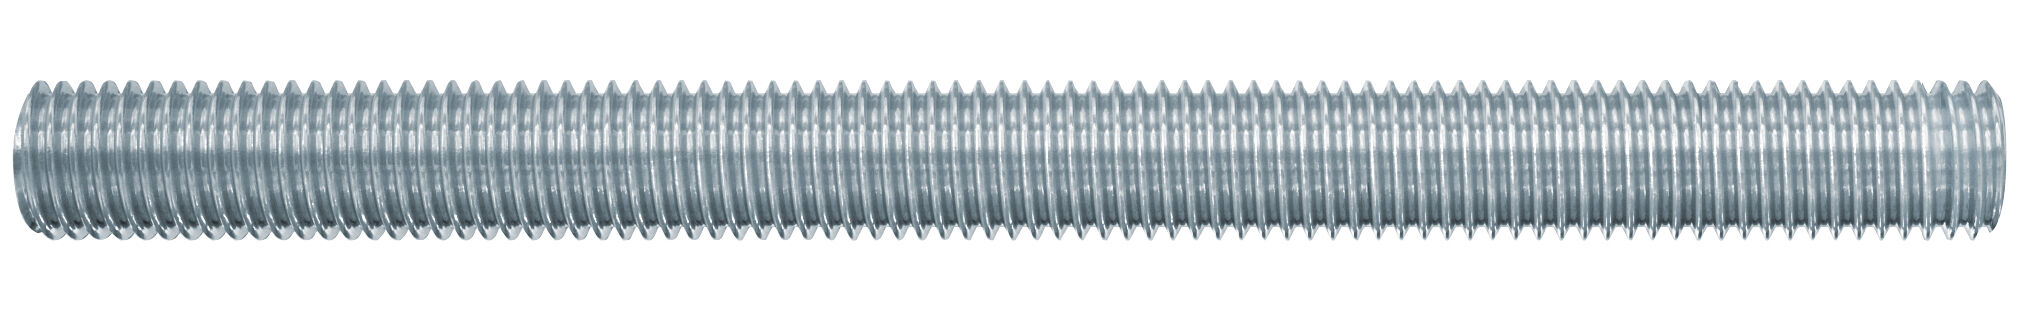 fischer threaded rod FIS A M 16 x 1000 gvz 1 m length steel grade 8.8